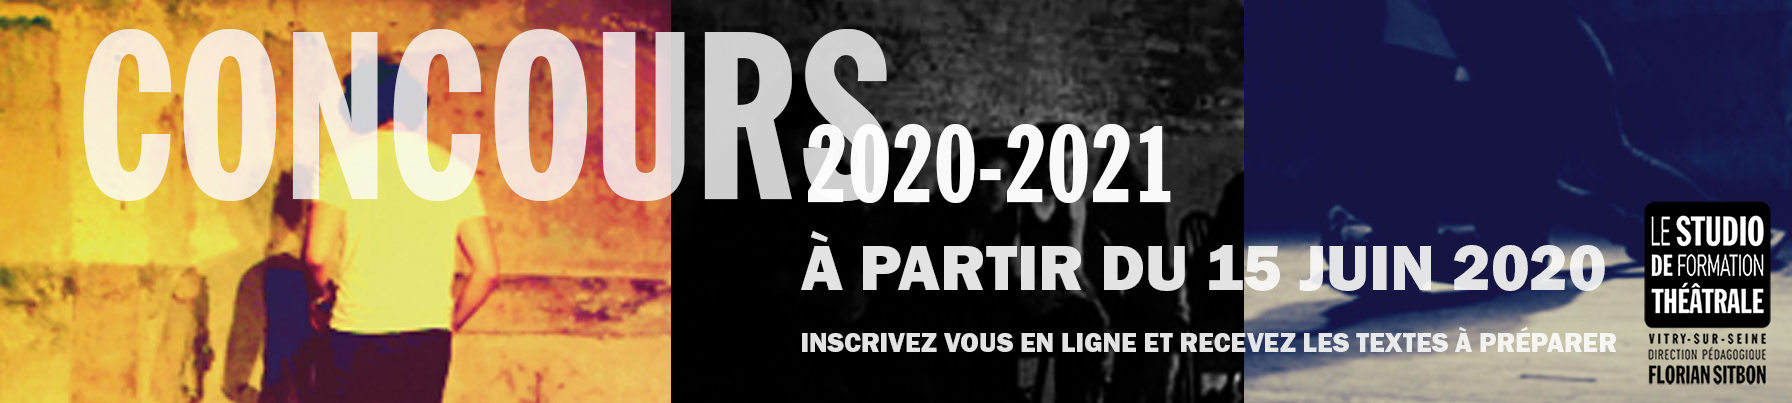 CONCOURS D'ENTRÉE 2020-2021